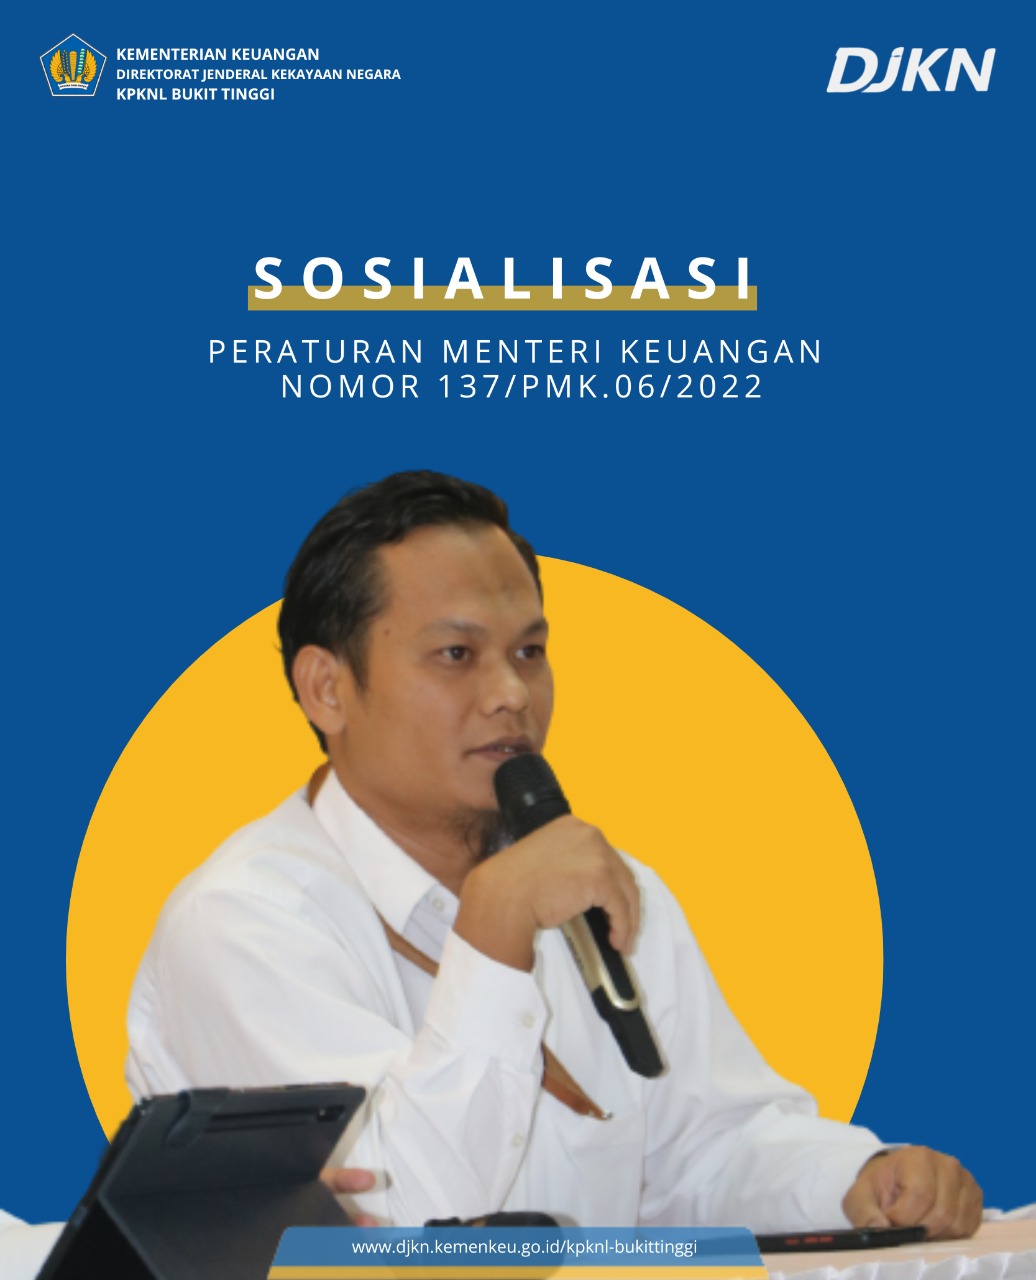 Sosialisasi PMK No. 137/PMK.06/ 2002 oleh KPKNL Bukittinggi